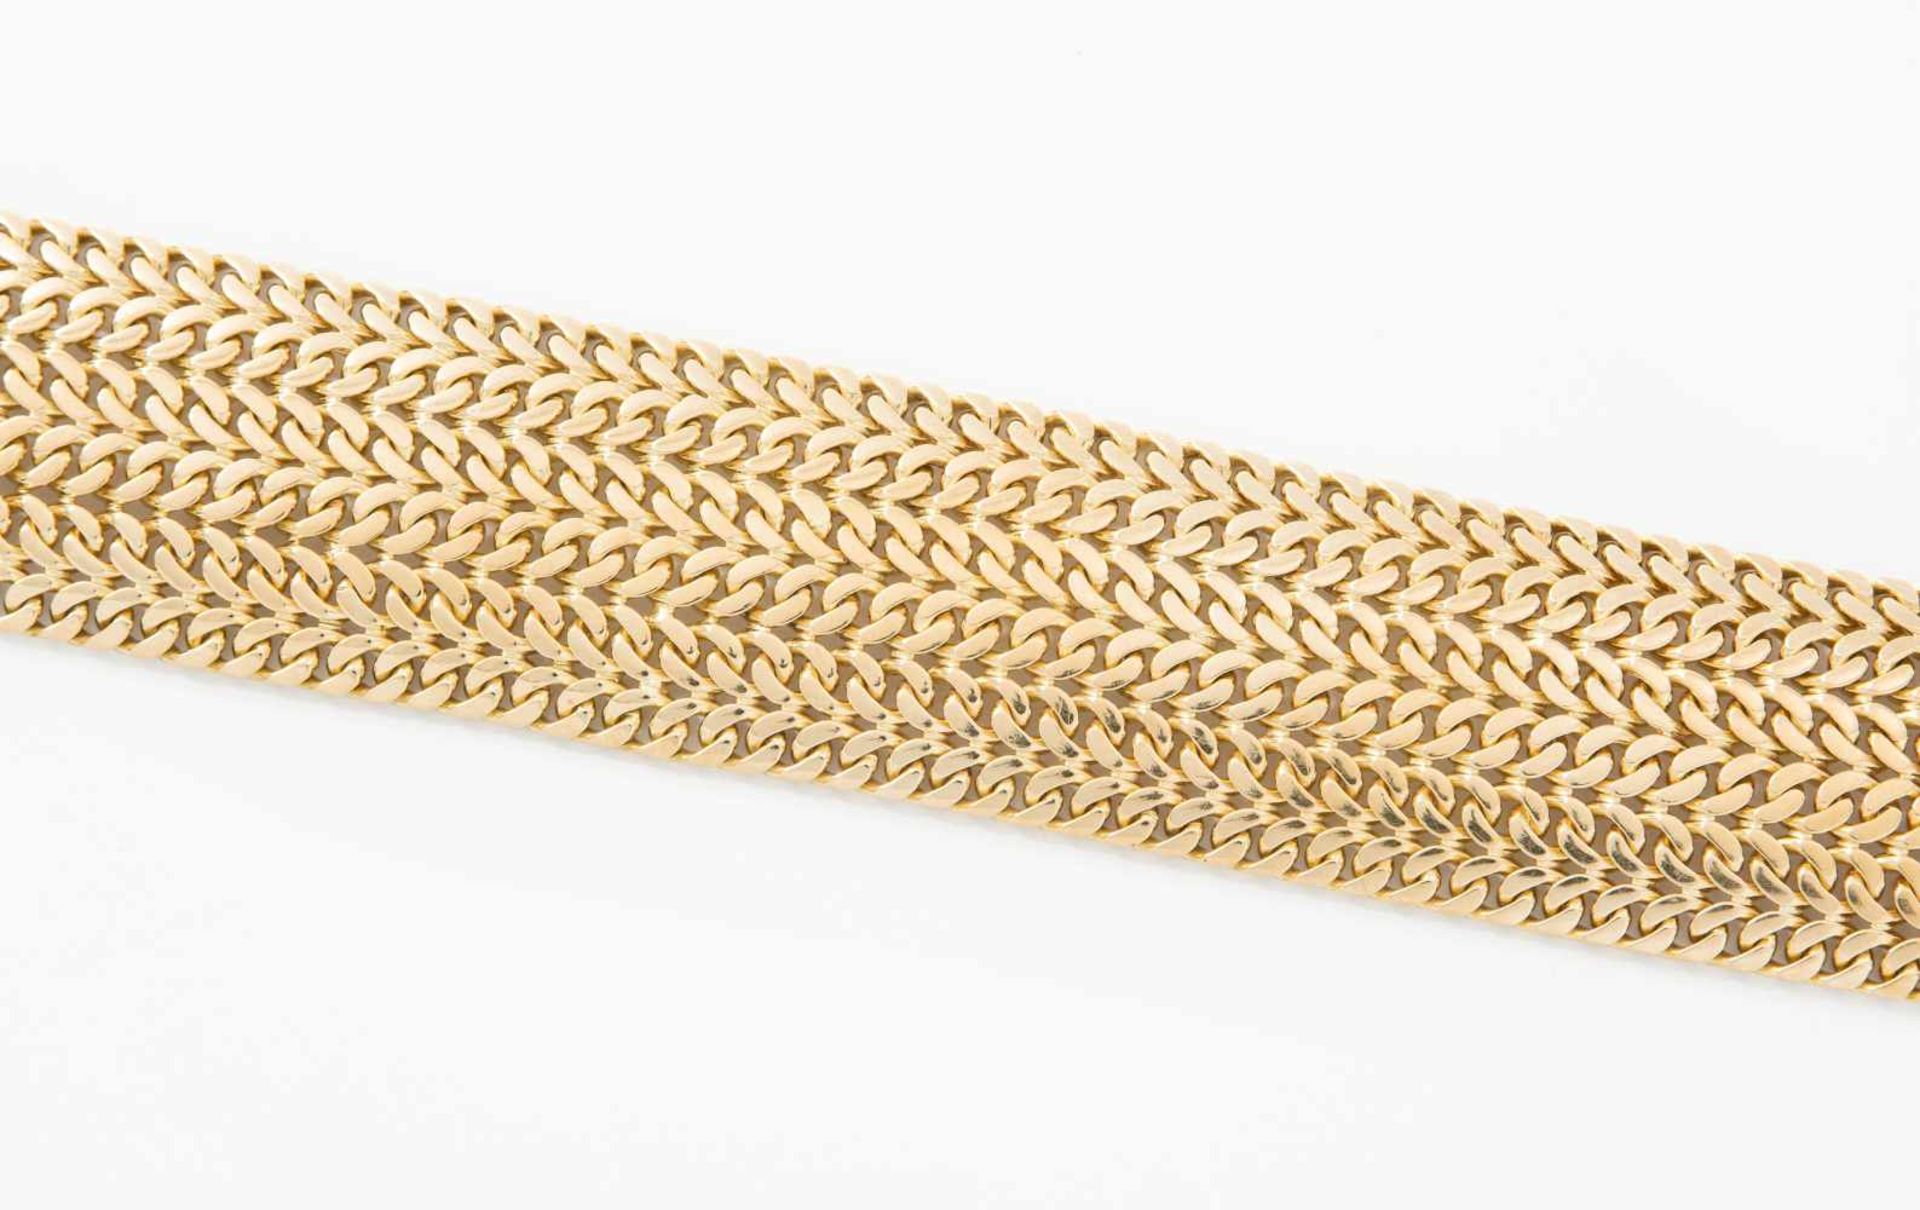 Gelbgold-Bracelet750 Gelbgold. Breites aus 6 Flachpanzerketten geschaffenes Bracelet. L 21 cm, B 3